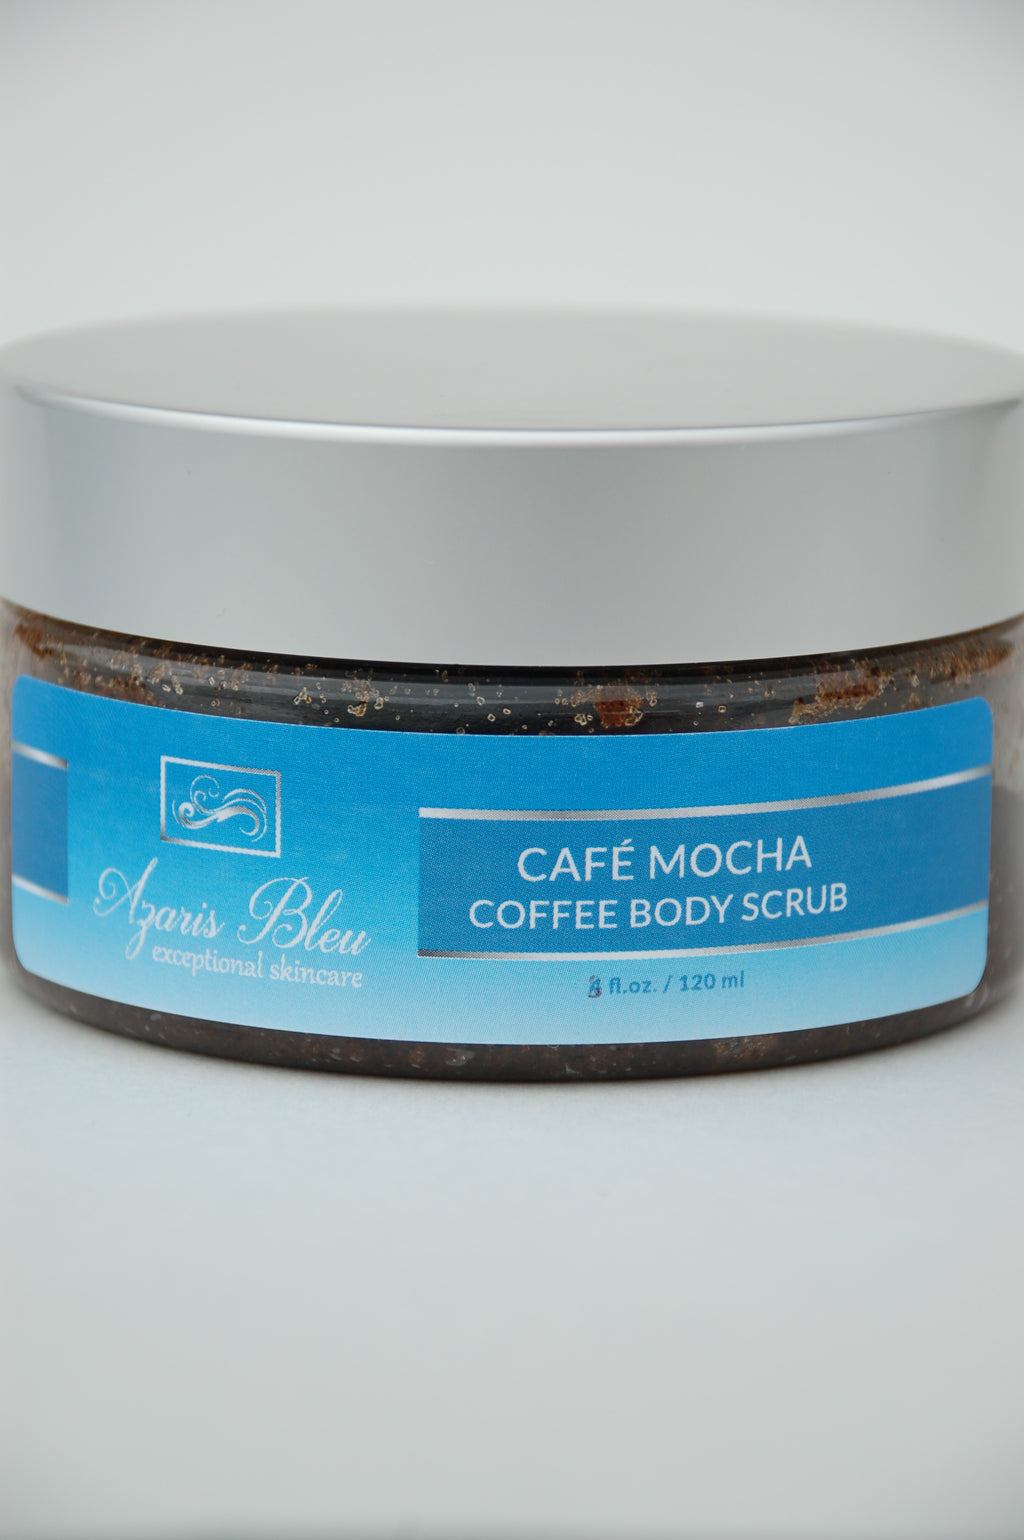 Cafe Mocha Coffee Body Scrub (8oz.)